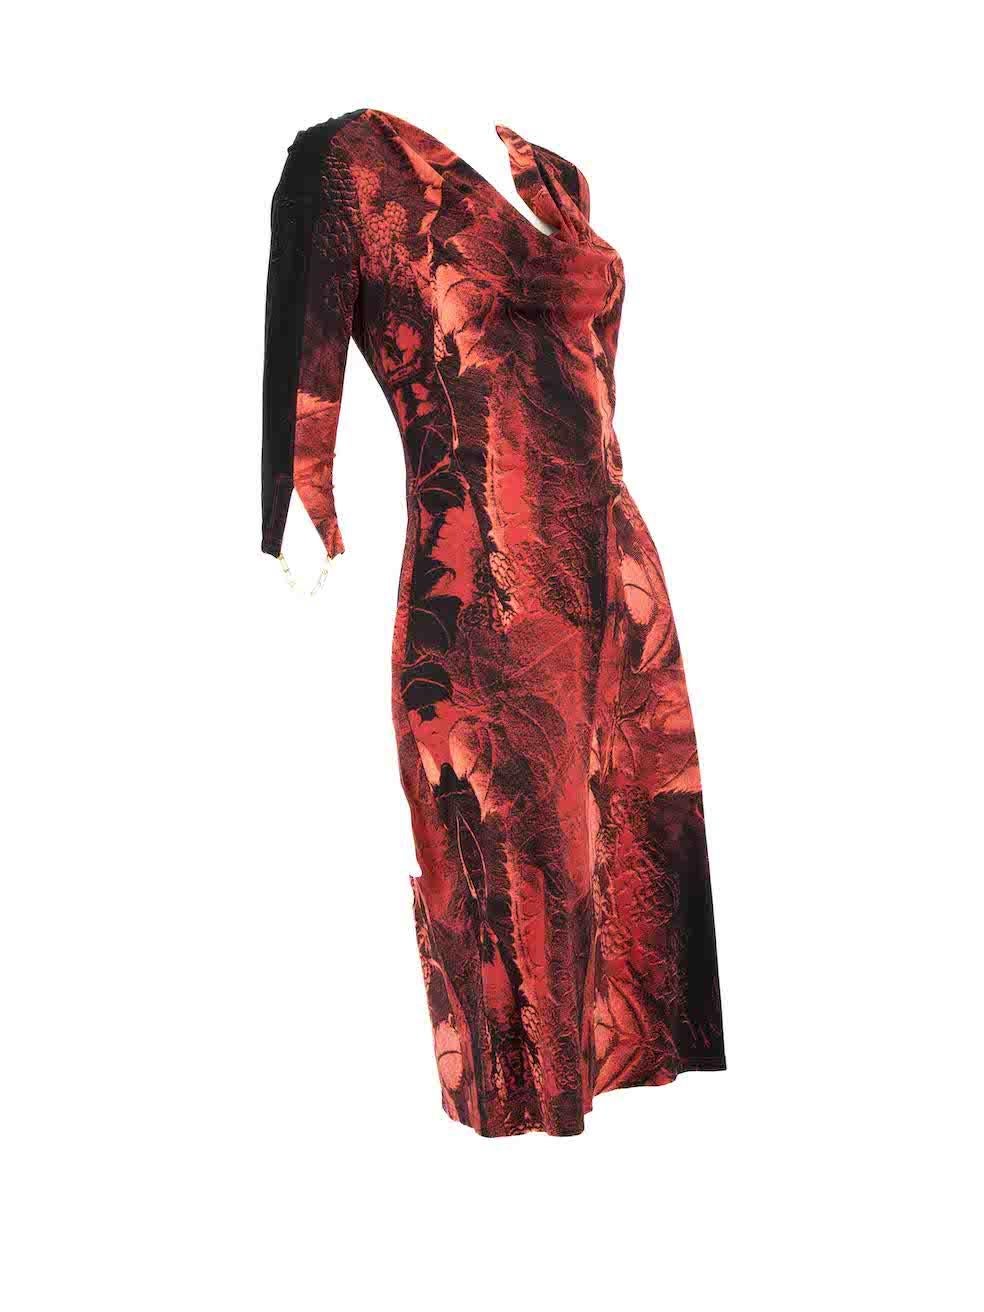 CONDIT ist sehr gut. Kaum sichtbare Abnutzungserscheinungen am Kleid sind bei diesem gebrauchten Roberto Cavalli Designer-Wiederverkaufsartikel zu erkennen.
 
 
 
 Einzelheiten
 
 
 Multicolour- Rot- und Schwarzton
 
 Synthetisch
 
 Knielanges